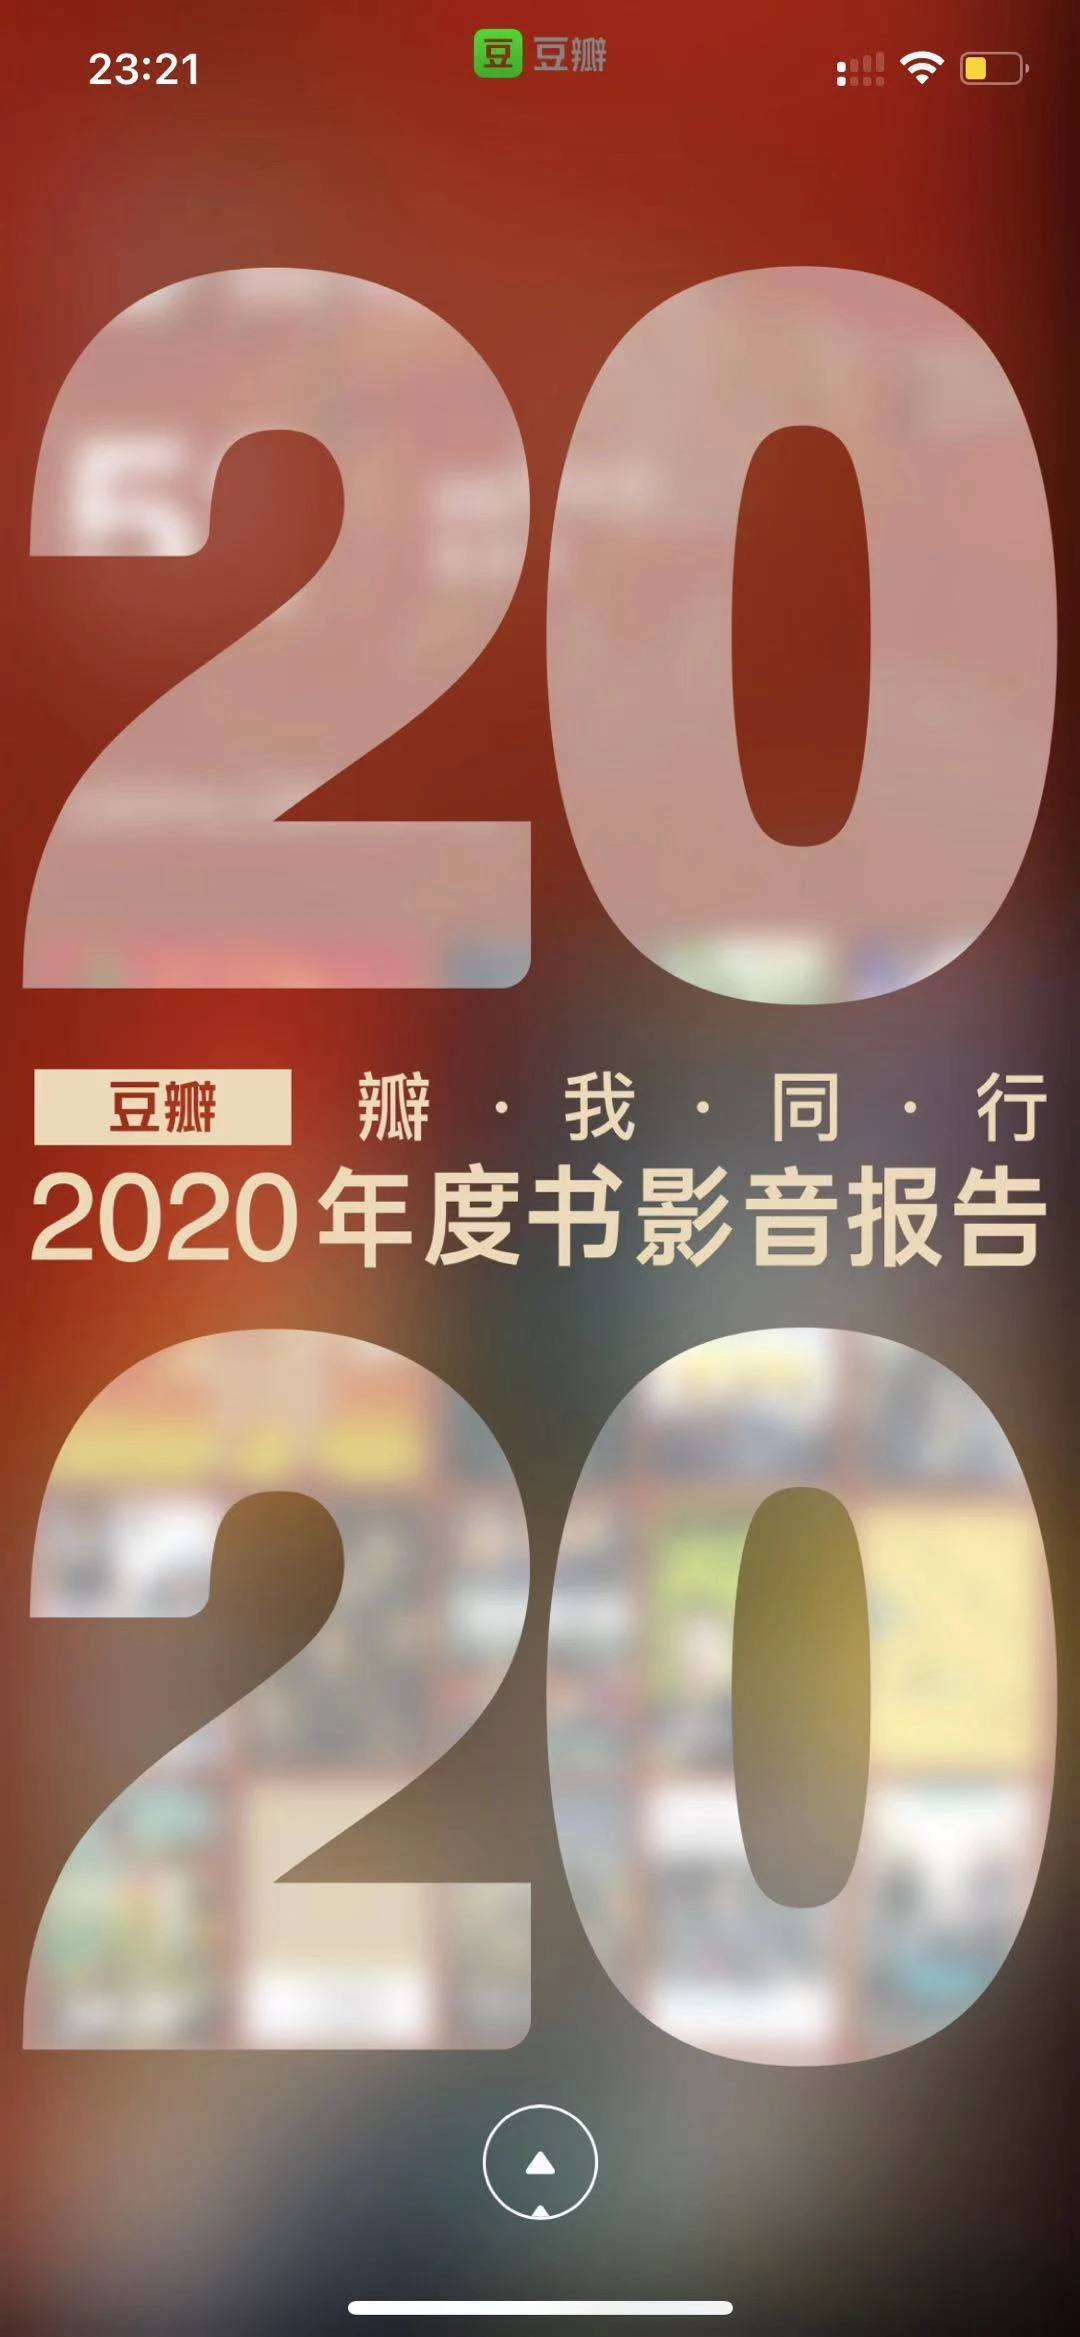 2020年度报告TOP15 APP超强盘点！